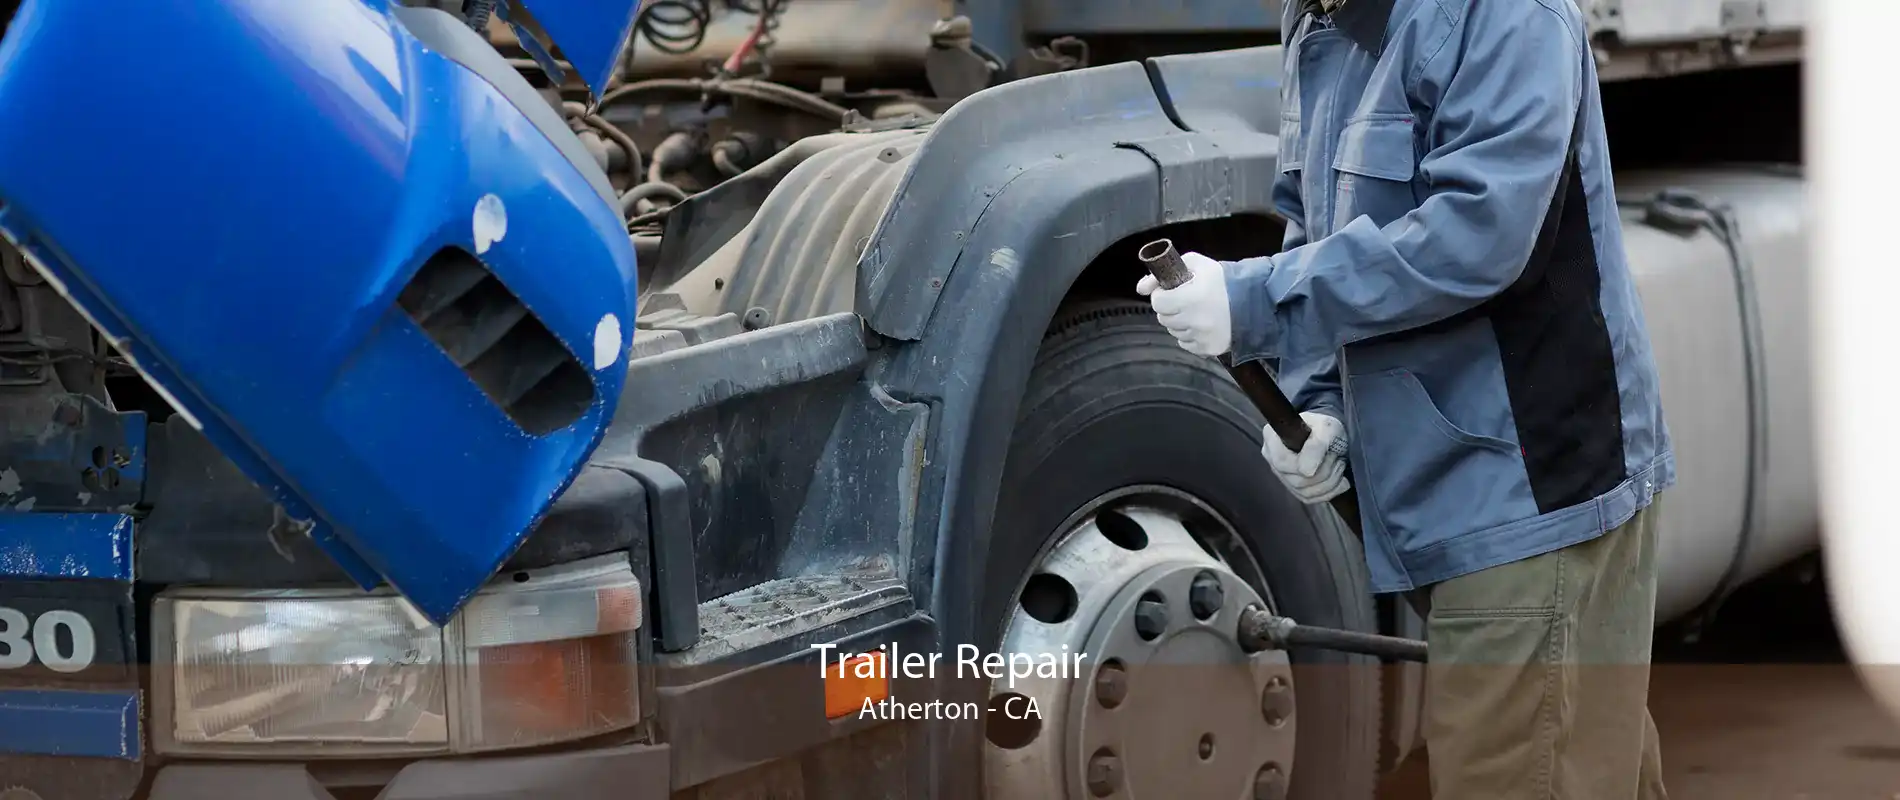 Trailer Repair Atherton - CA